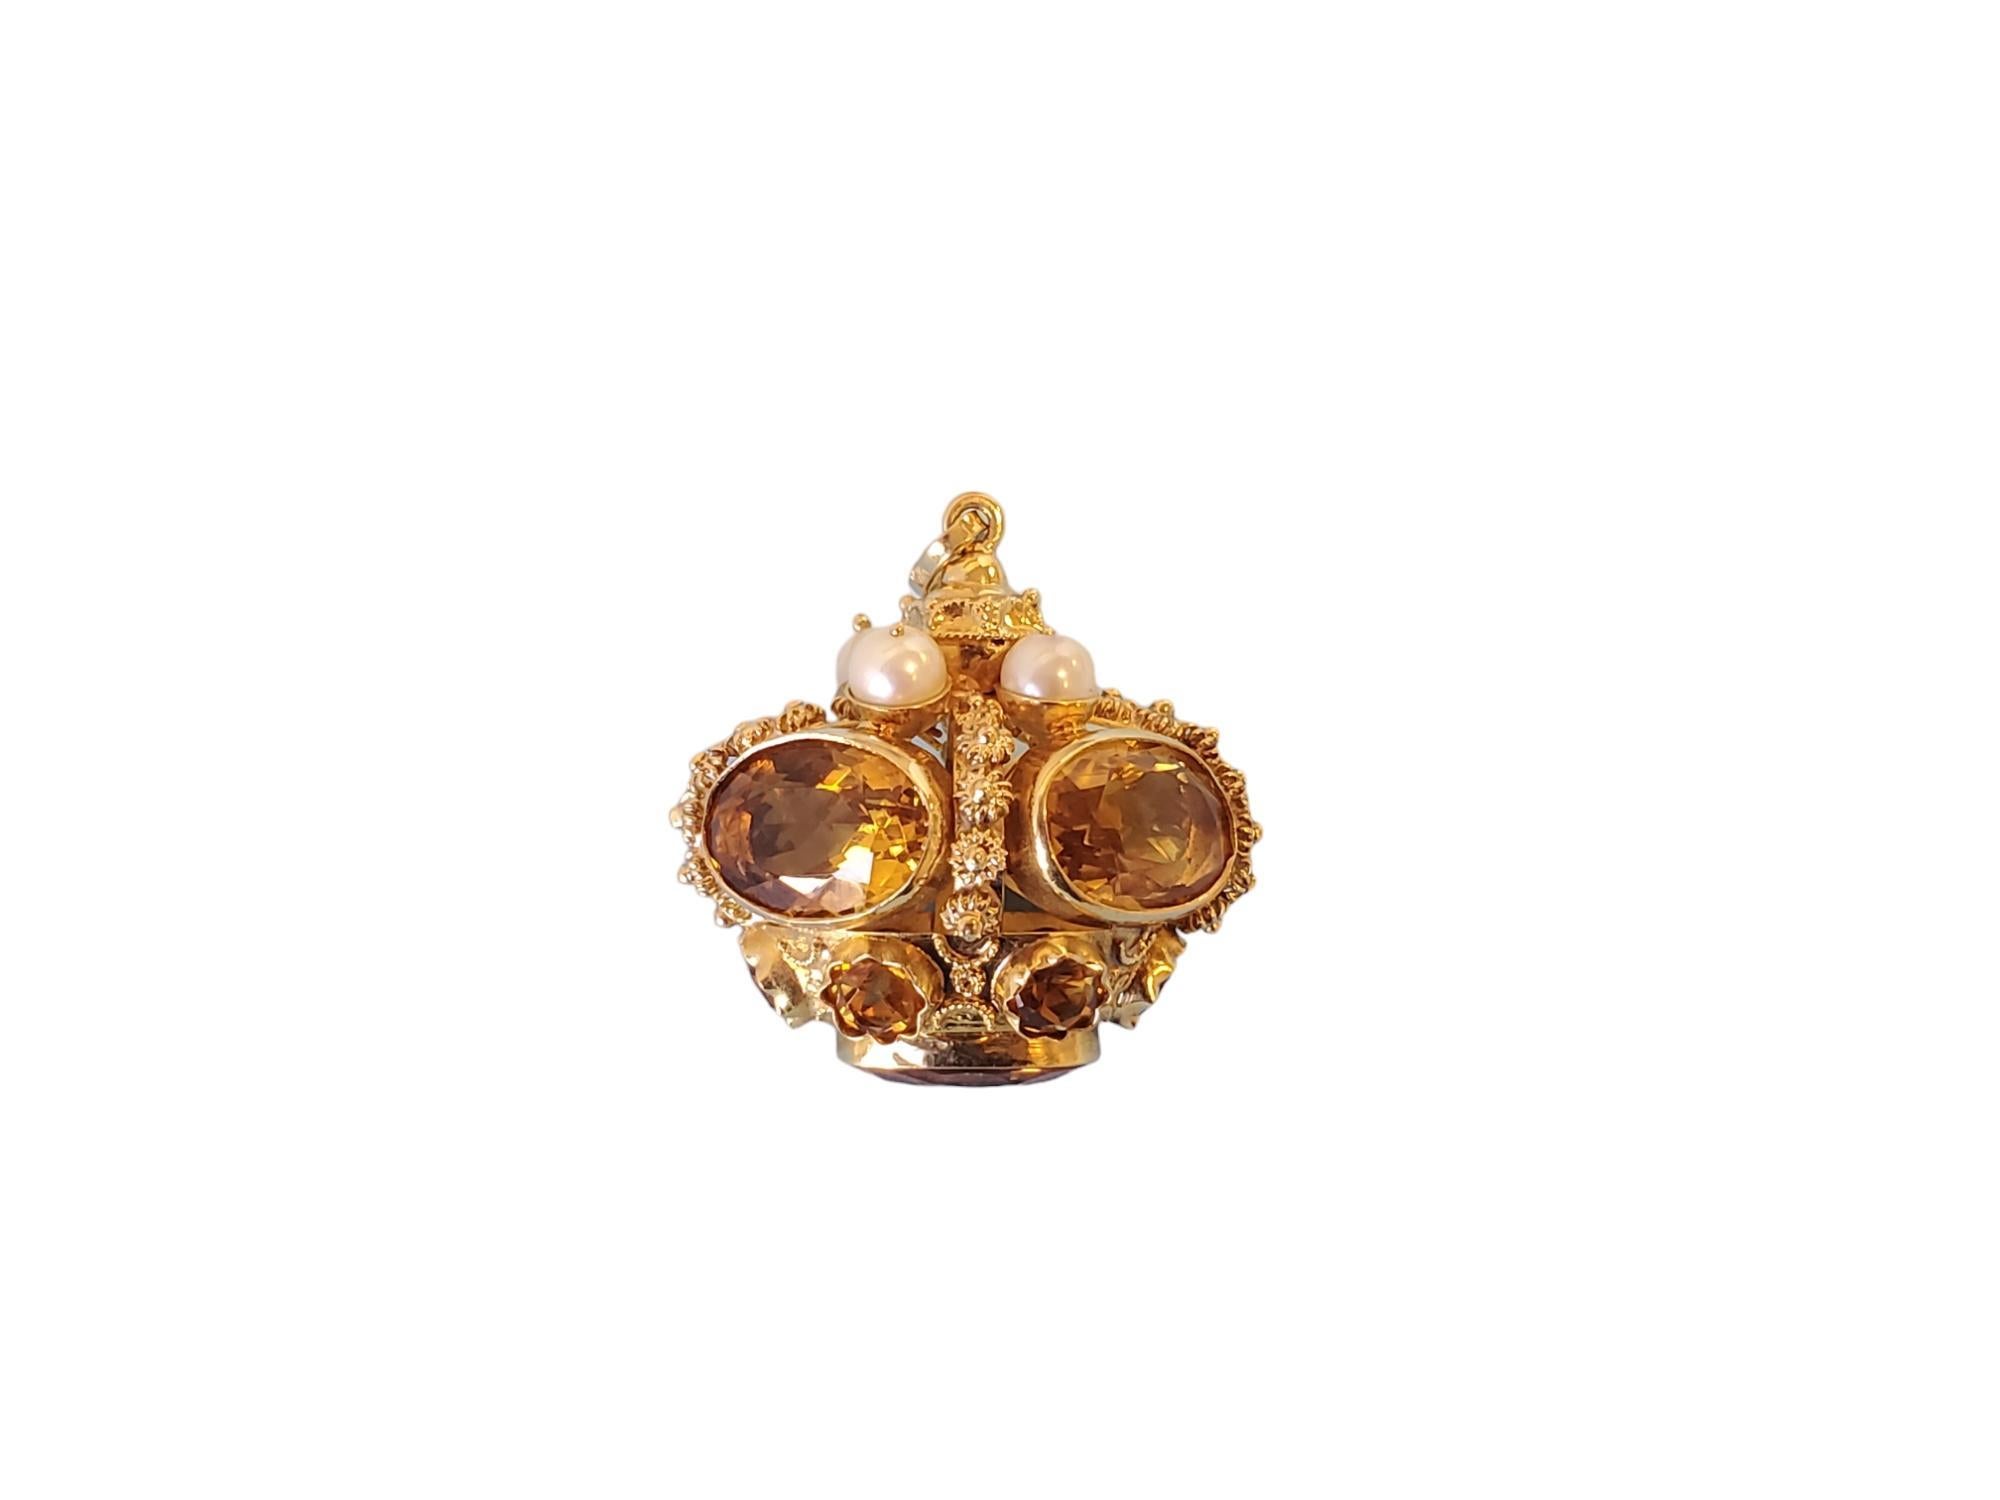 Listed ist ein 18k Gelbgold Vintage Krone Anhänger / Charm. Diese Krone ist mit schönen ovalen Citrin-Edelsteinen und Perlenakzenten versehen. Es ist in fantastischem Zustand und wiegt stolze 23,1 Gramm. Seine etwa 1,25 